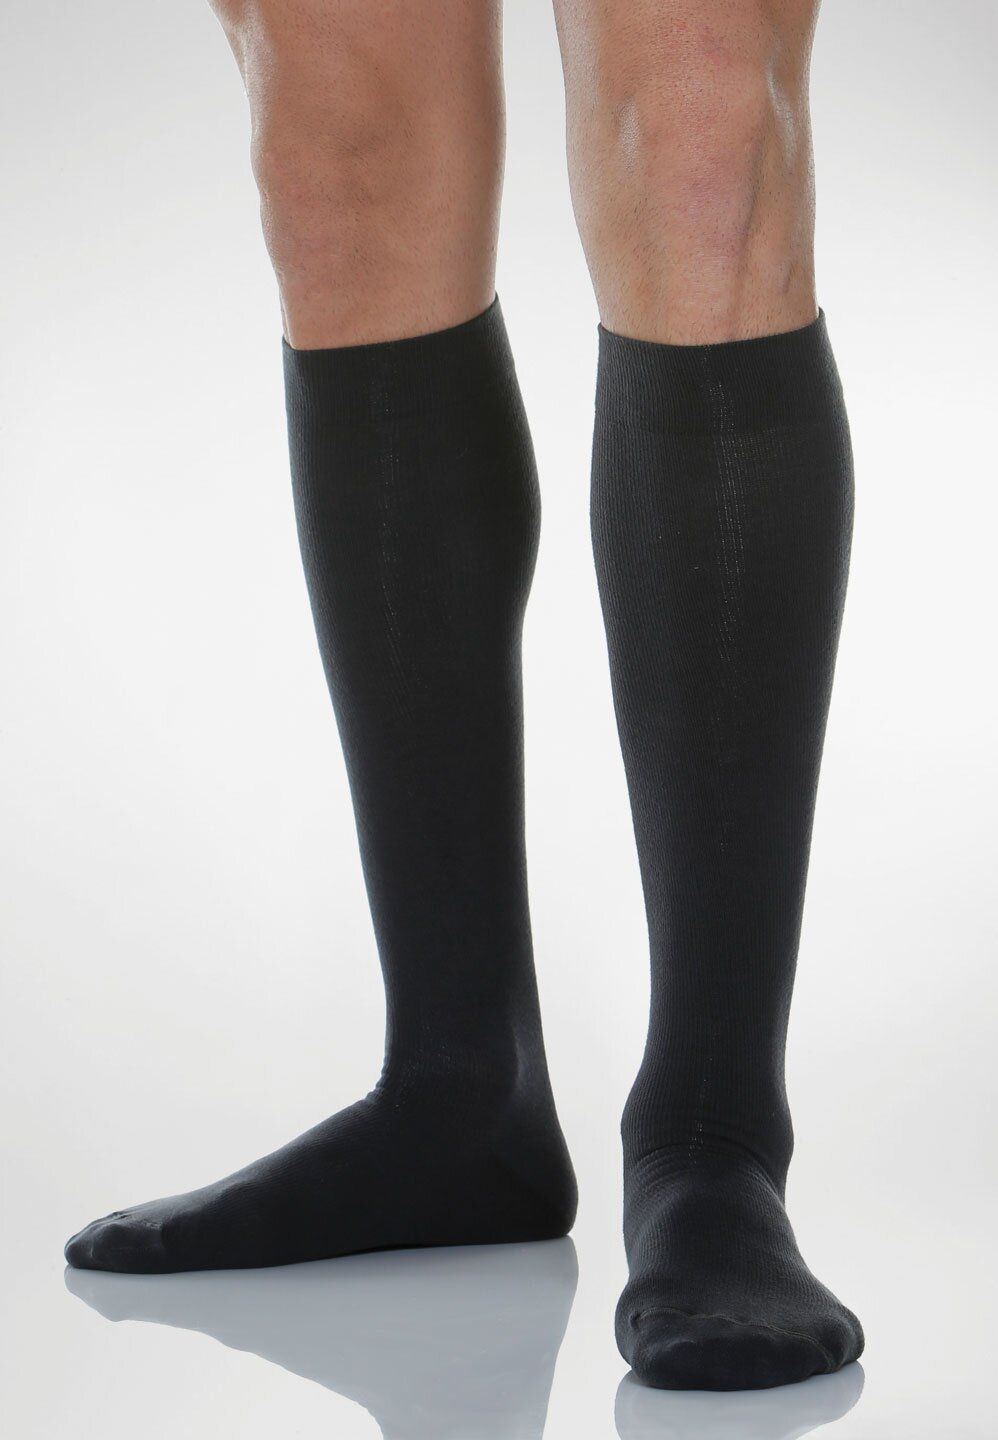 Relaxsan Cotton Socks Гольфы с хлопком 1 класс компрессии Унисекс, р. 5, арт. 820 (18-22 мм рт.ст.), 140 DEN (черного цвета. с хлопком), пара, 1 шт.